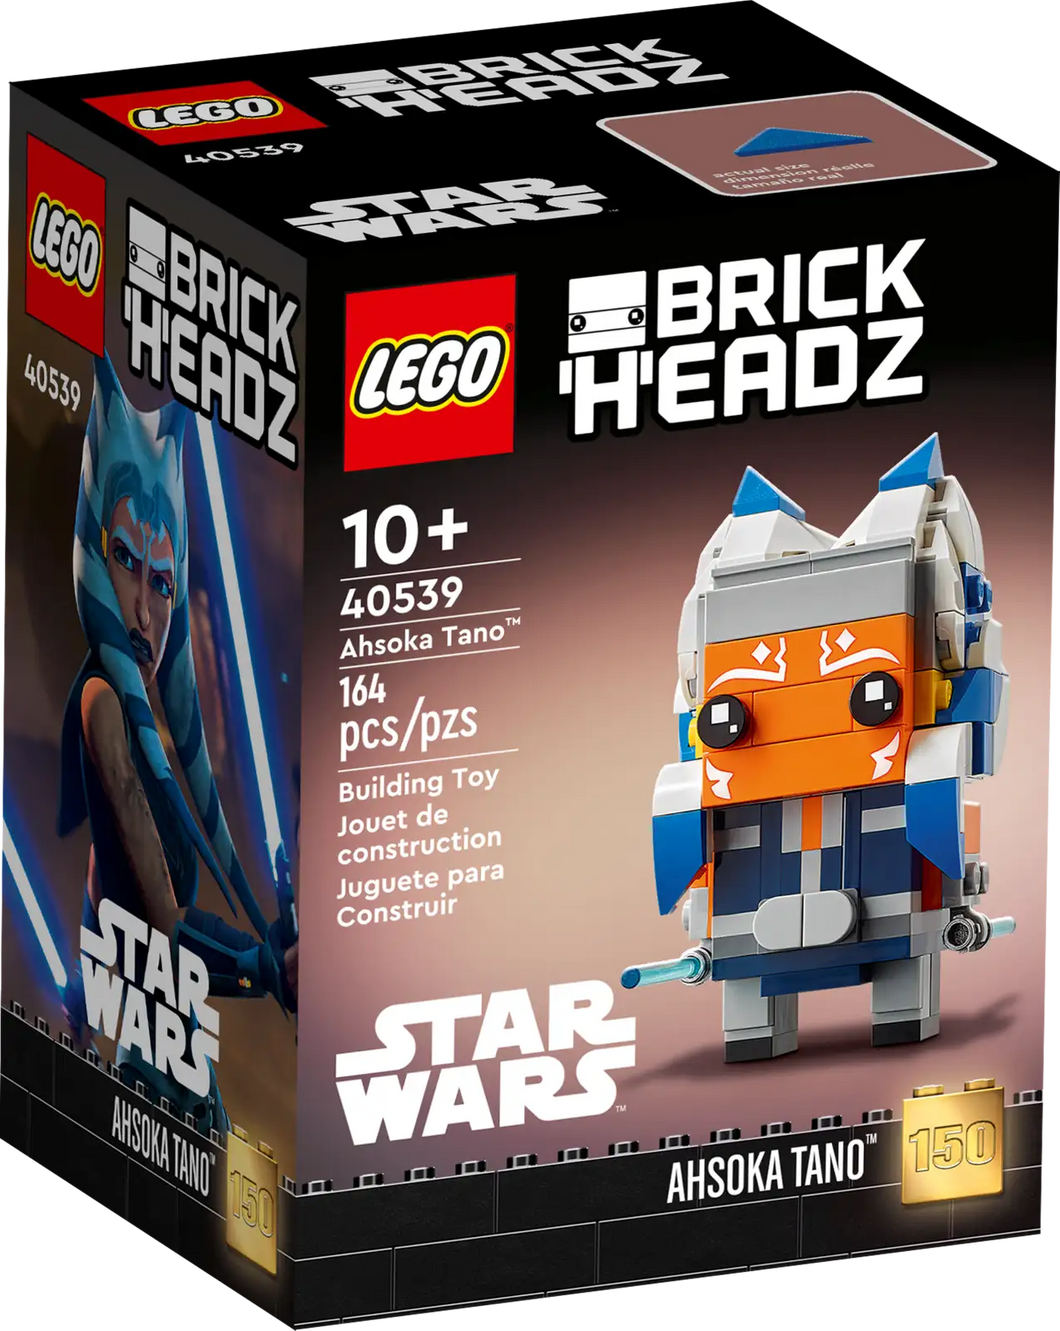 LEGO BrickHeadz Star Wars Ahsoka Tano 40539